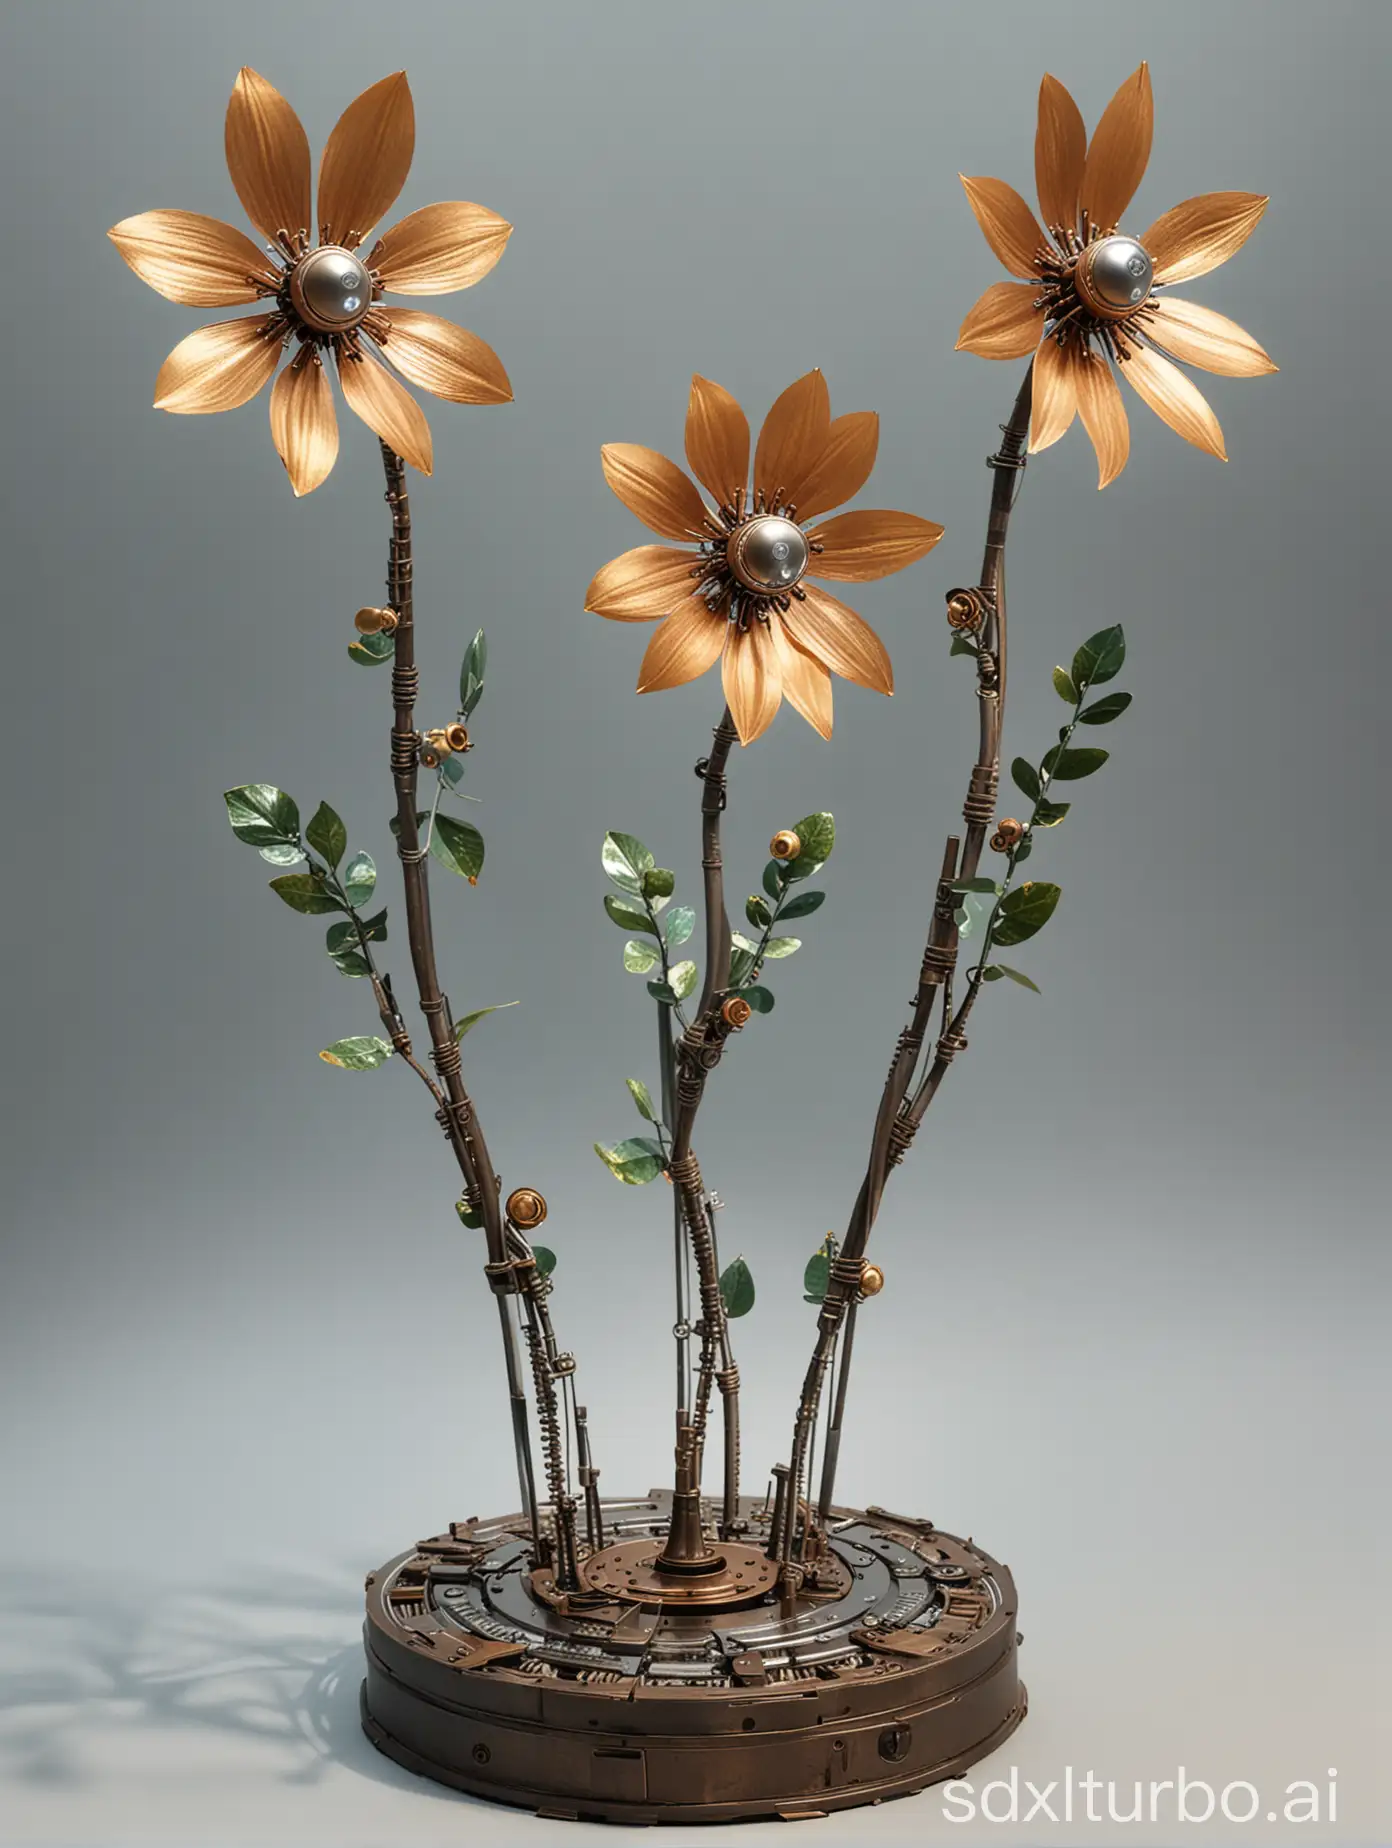 三朵金属机械的花长在一个底座上面，三朵花螺旋生长高低排列，其中两个是花苞，最高的一个开着透明花瓣的花朵，透明的花瓣上面有电路纹理